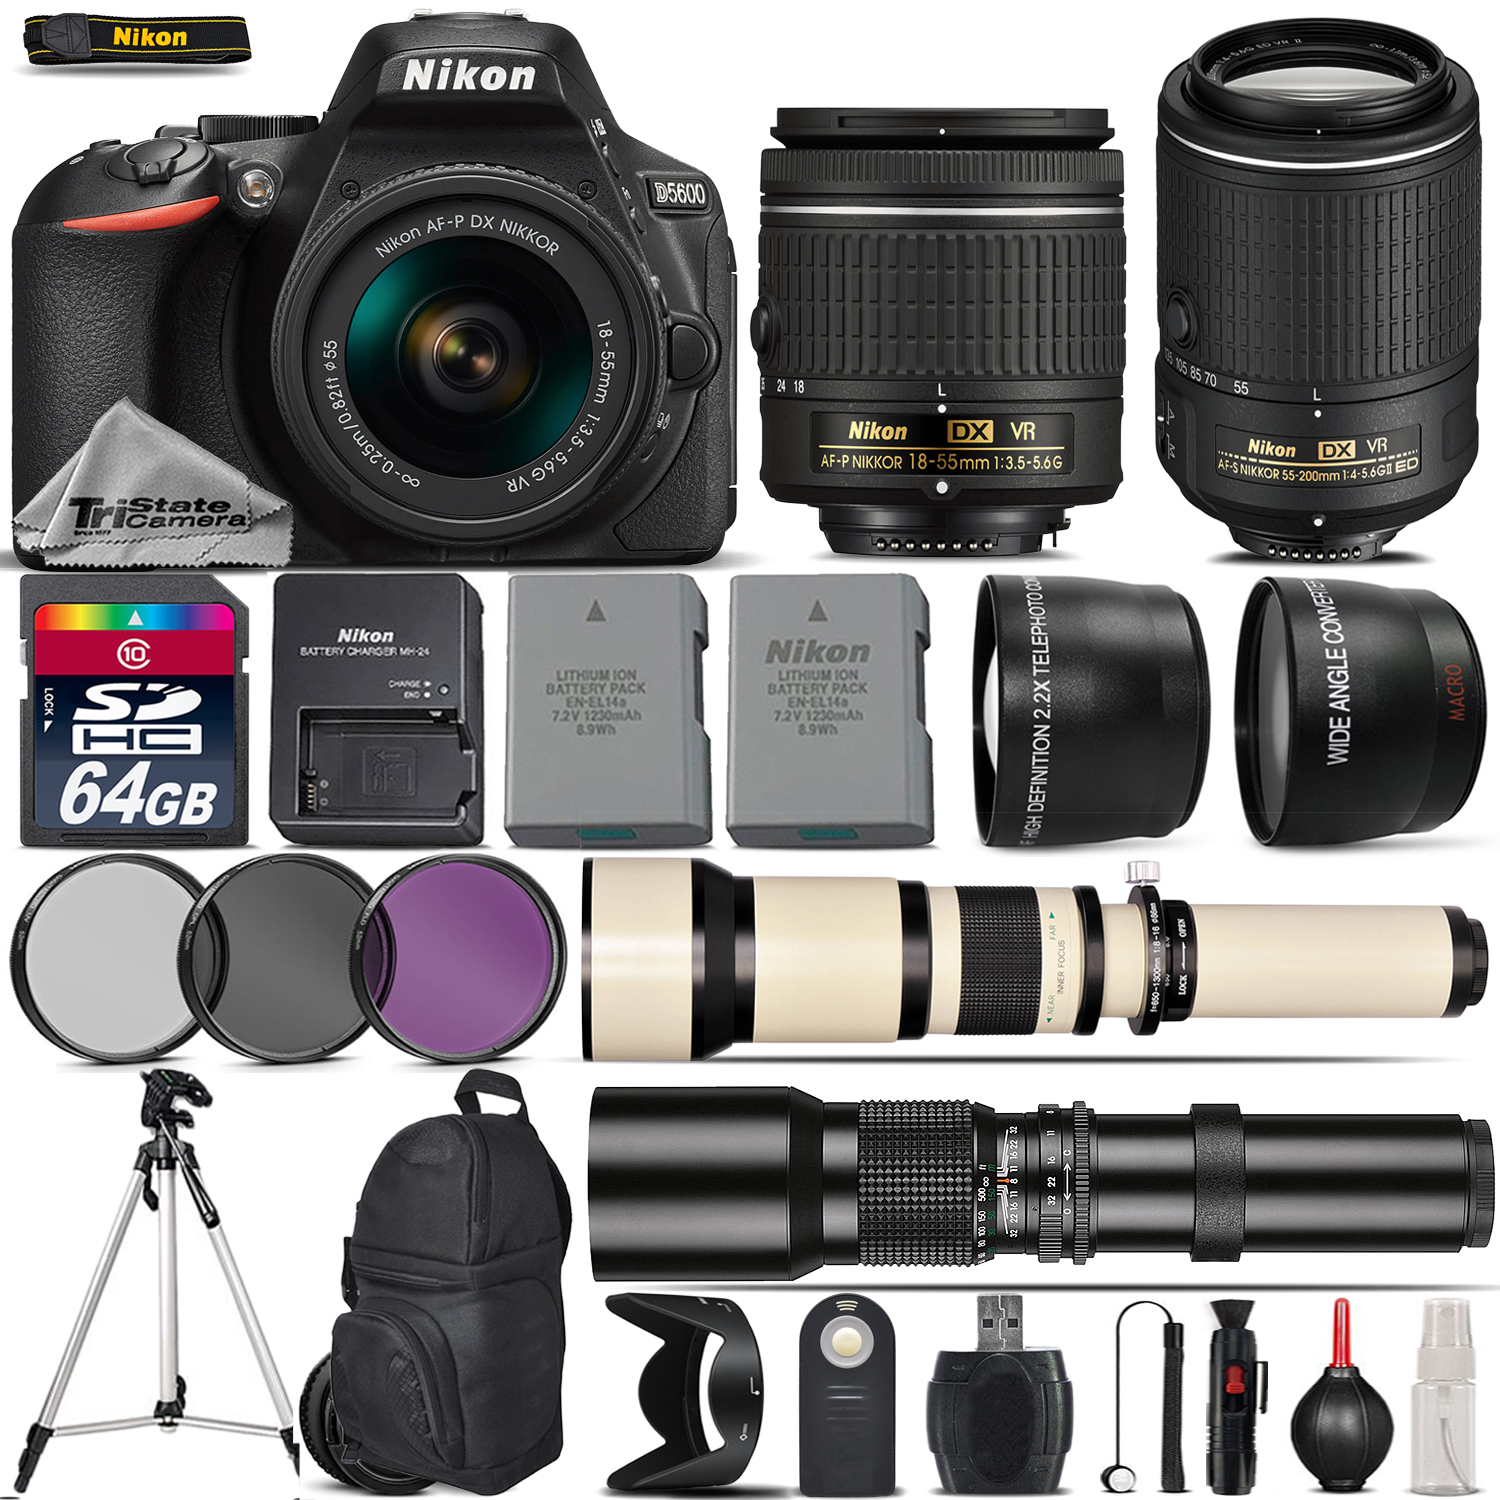 D5600 DSLR Camera + 18-55mm AF P Lens + 55-200mm VR II + 650-1300mm +500mm *FREE SHIPPING*